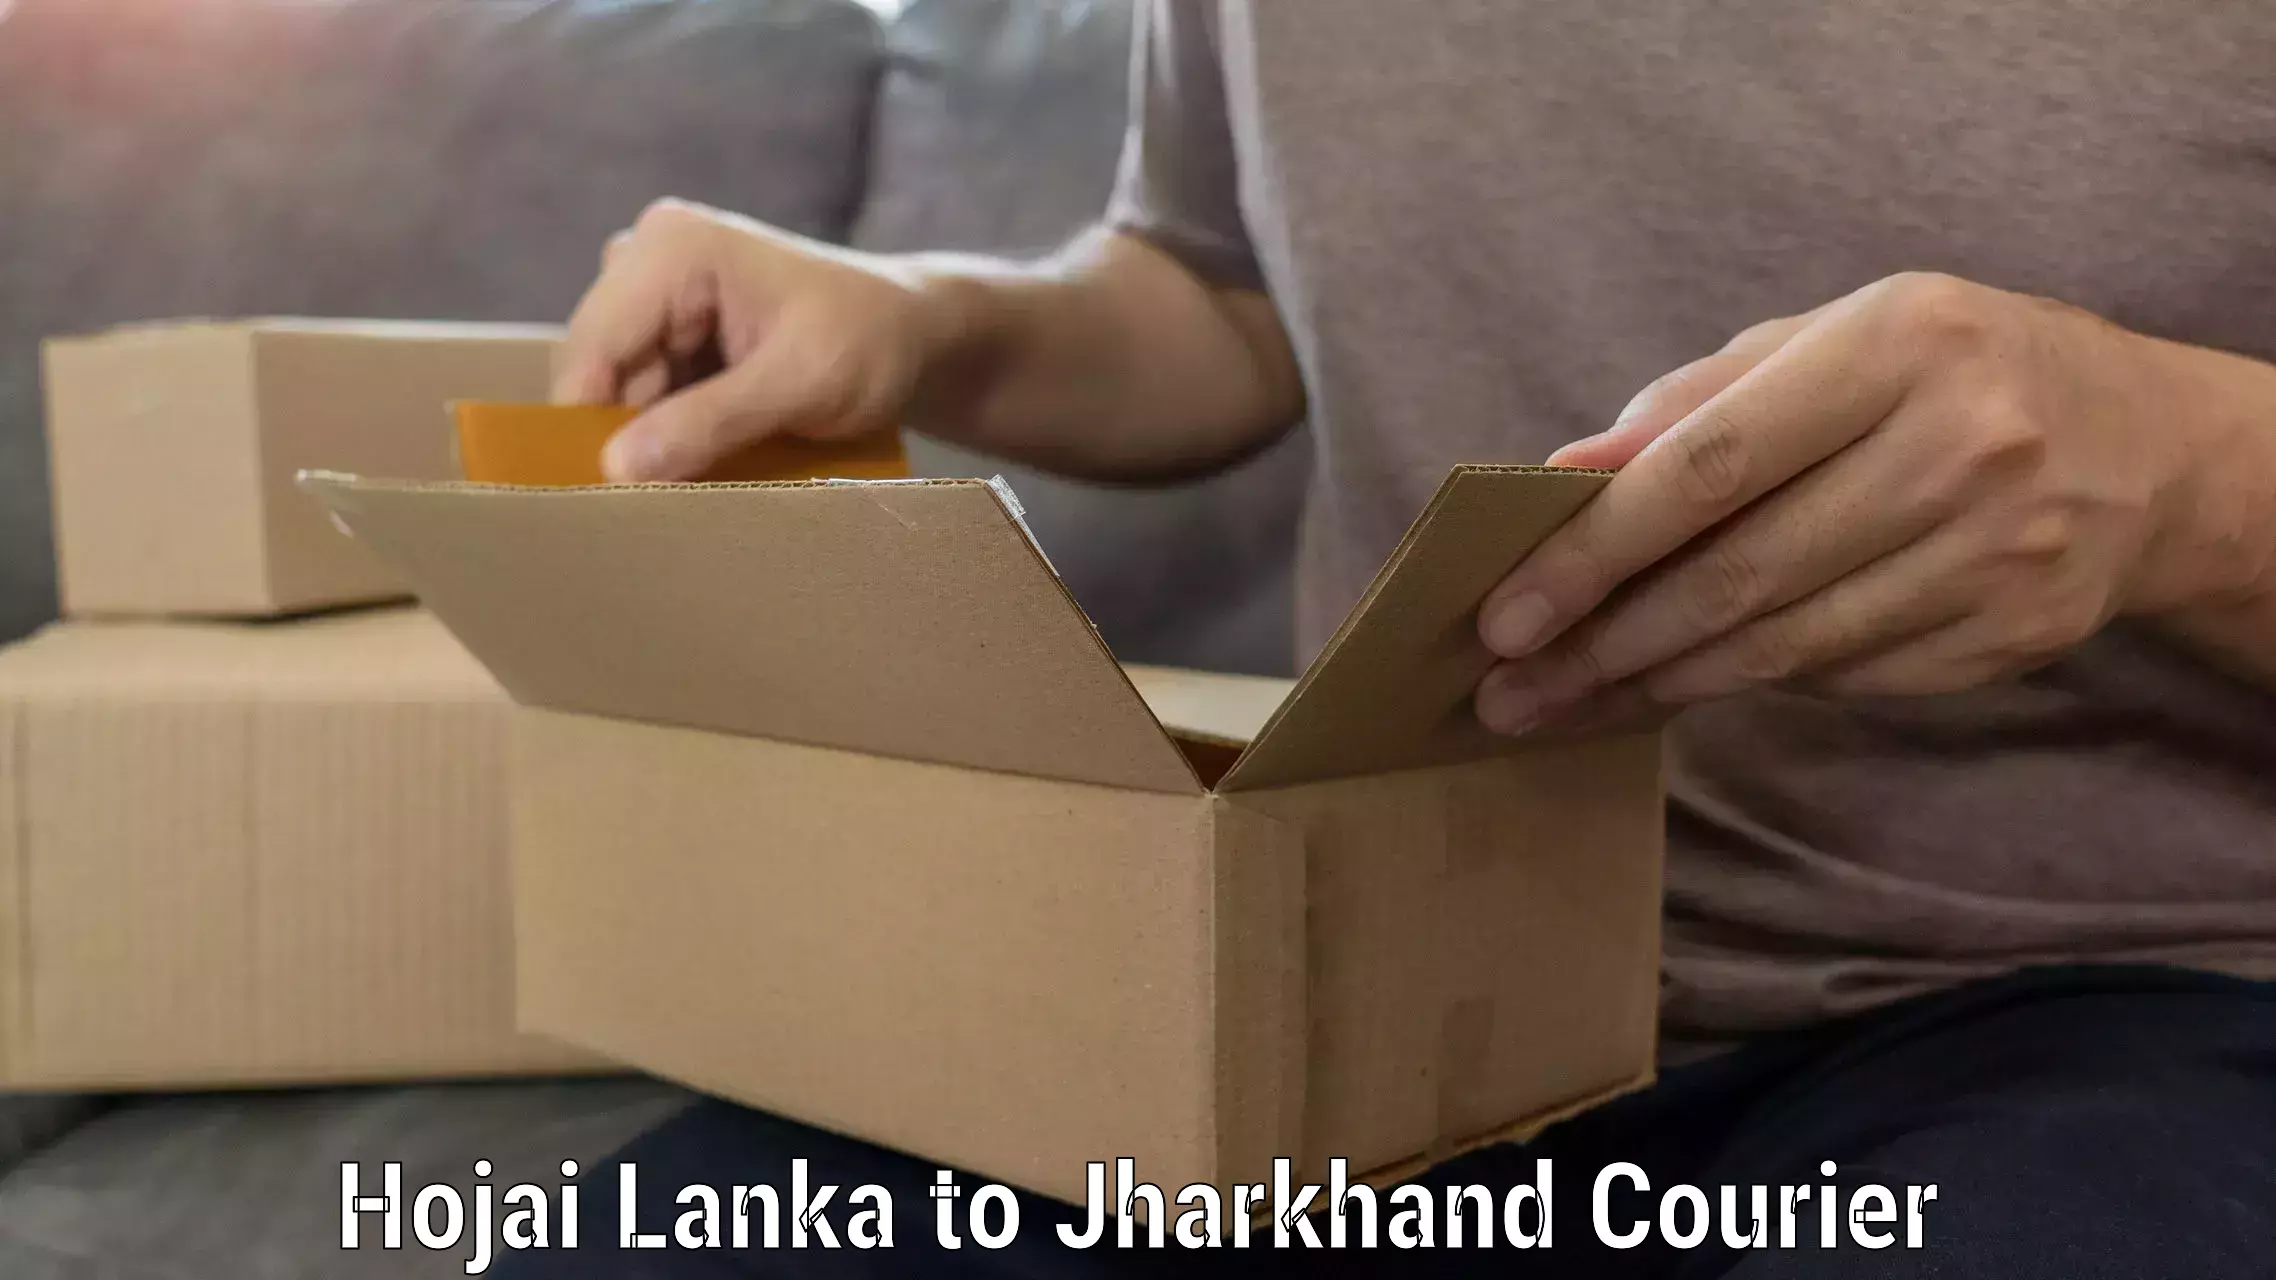 Household goods shipping Hojai Lanka to Mahagama